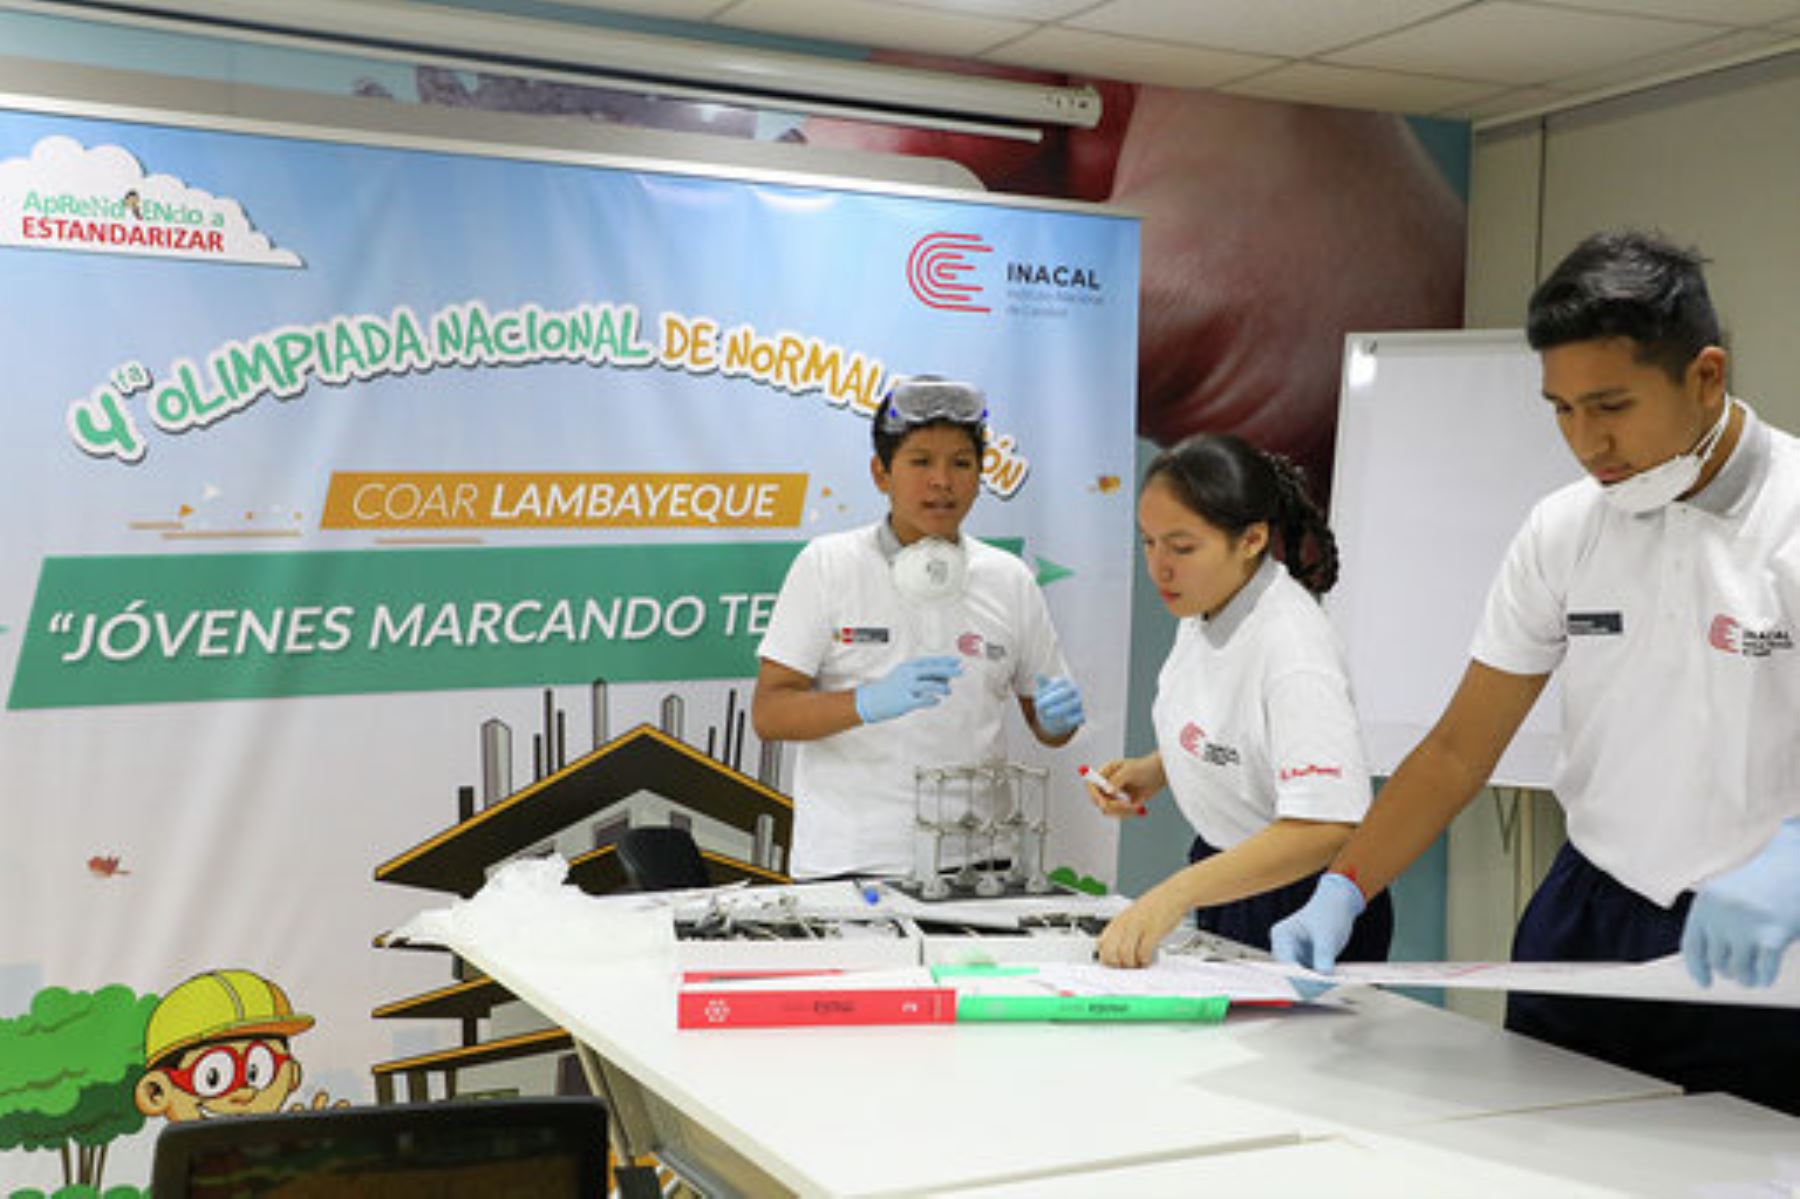 Escolares del COAR Lambayeque ganaron Cuarta Olimpiada Nacional de Normalización y representarán al Perú en Olimpiada Internacional de Normalización a realizarse en Corea del Sur.